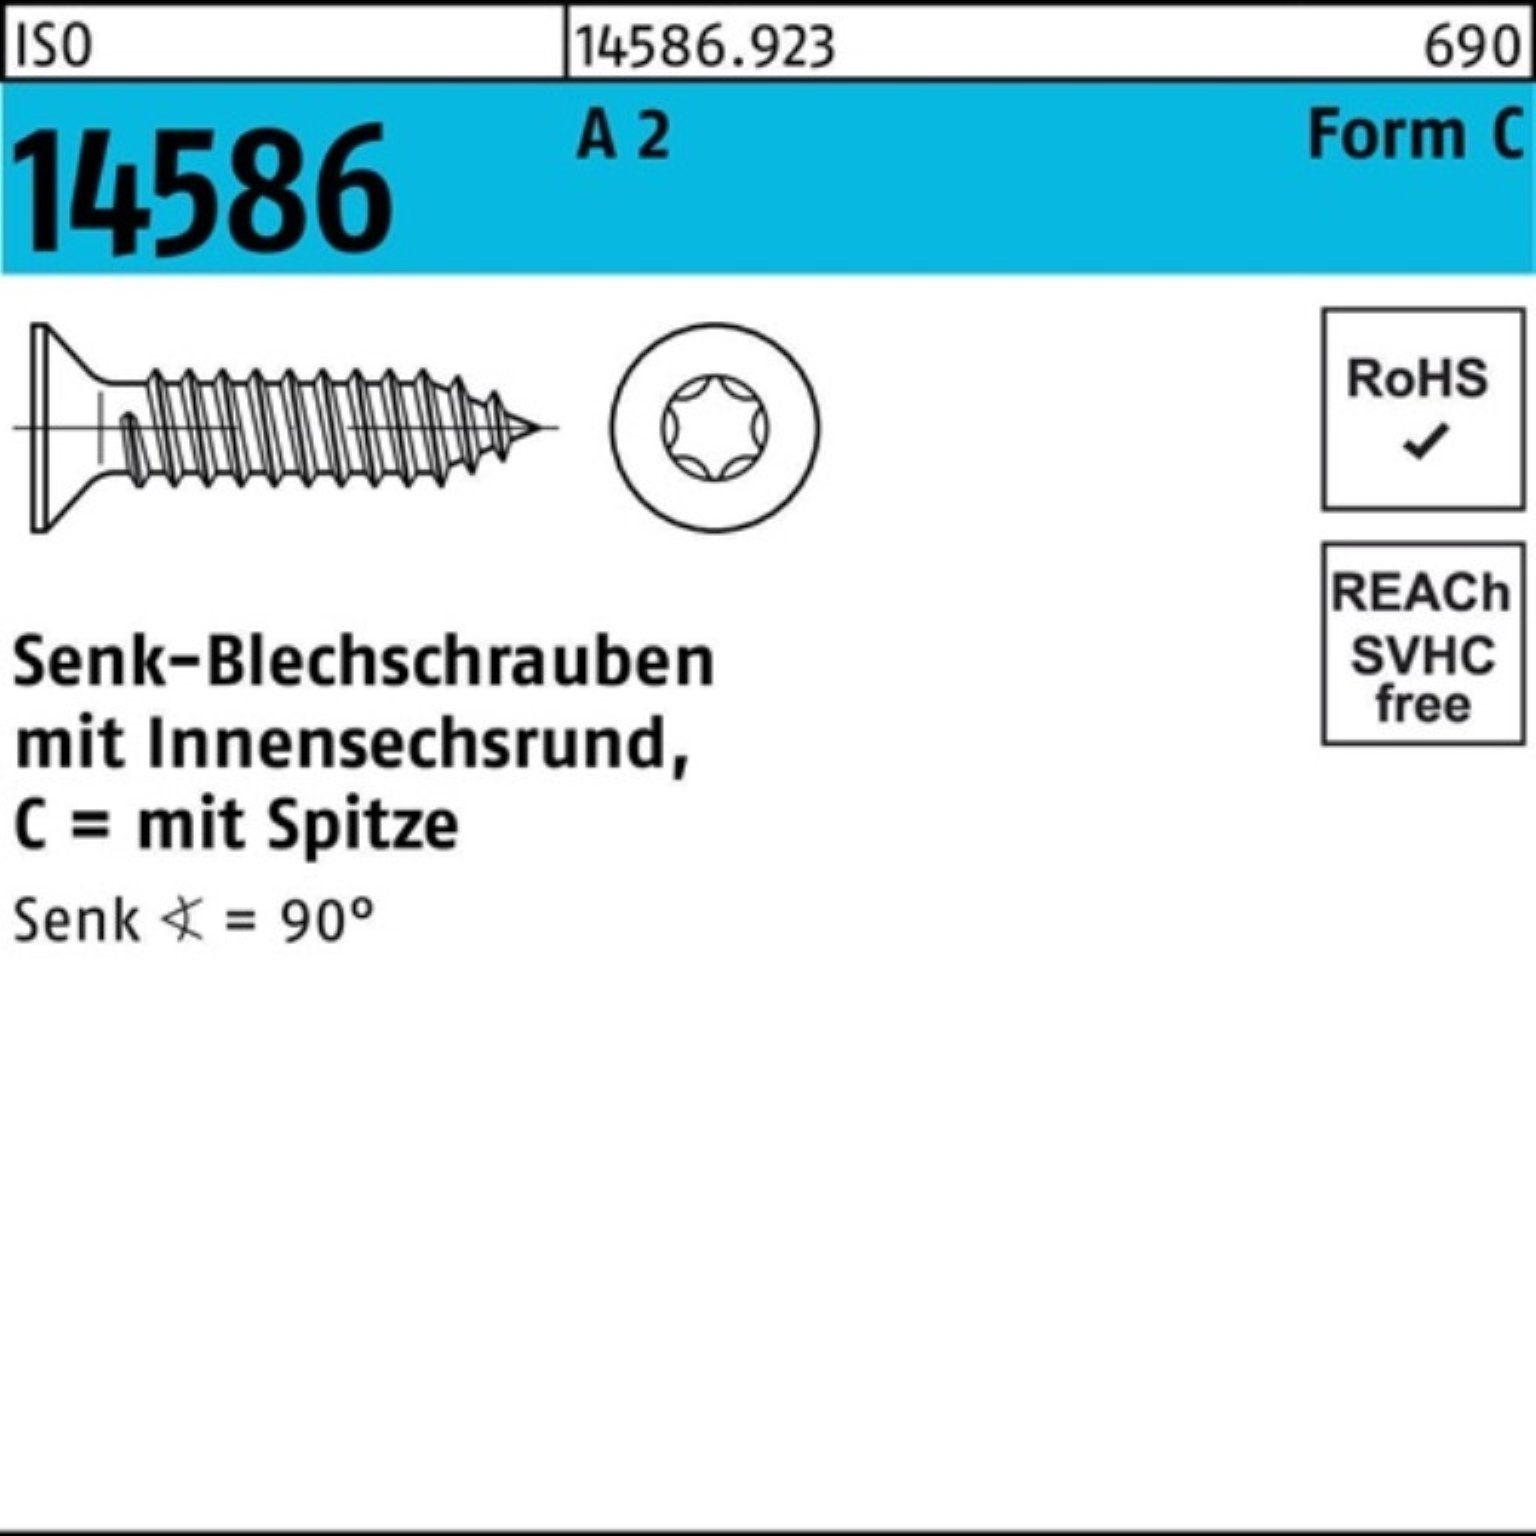 Reyher Schraube 9,5 2 A 14586 ISO T15 ISR/Spitze 1000er -C Senkblechschraube Pack 3,5x